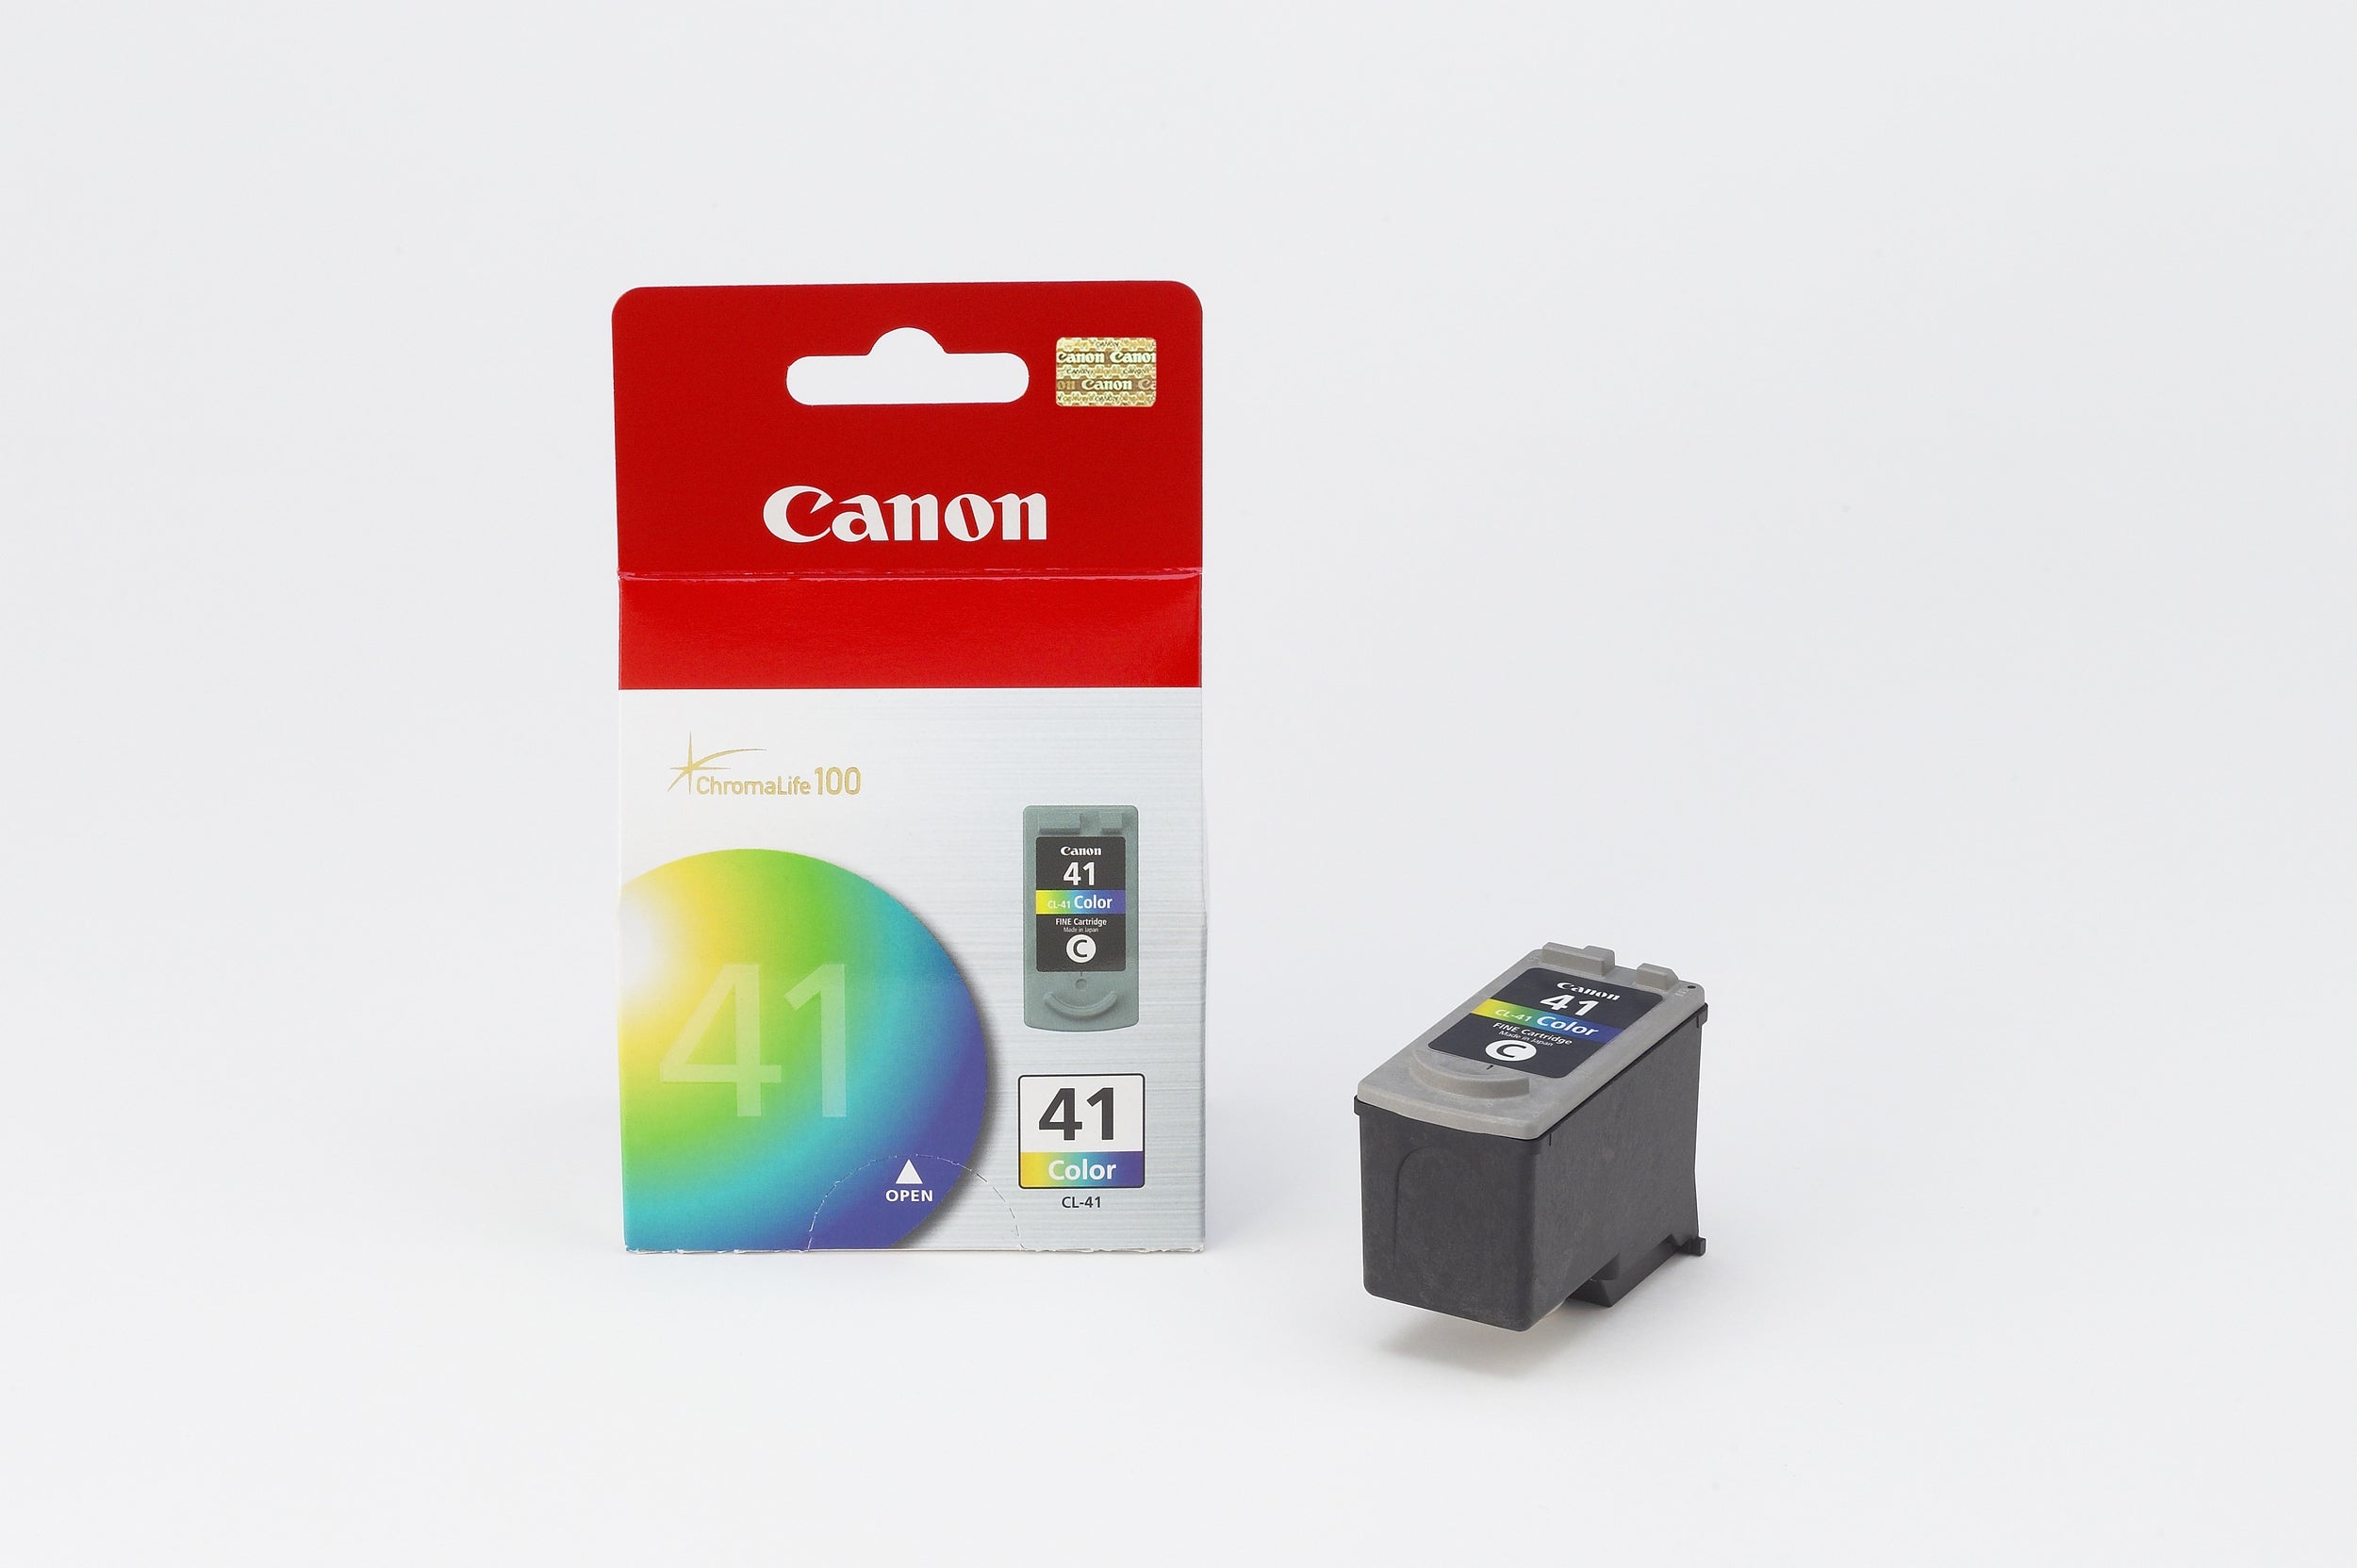 Cartucho Canon Cl-41 Color, Rendimiento Aprox 320 Paginas, Compatible Con Ip1300, Ip1600, Ip1700, Ip1800, Ip1900, Ip2200, Ip6210D, Ip6220D, Ip6310D, Ip2500, Ip2600, Mp140, Mp150, Mp160, Mp170, Mp180.